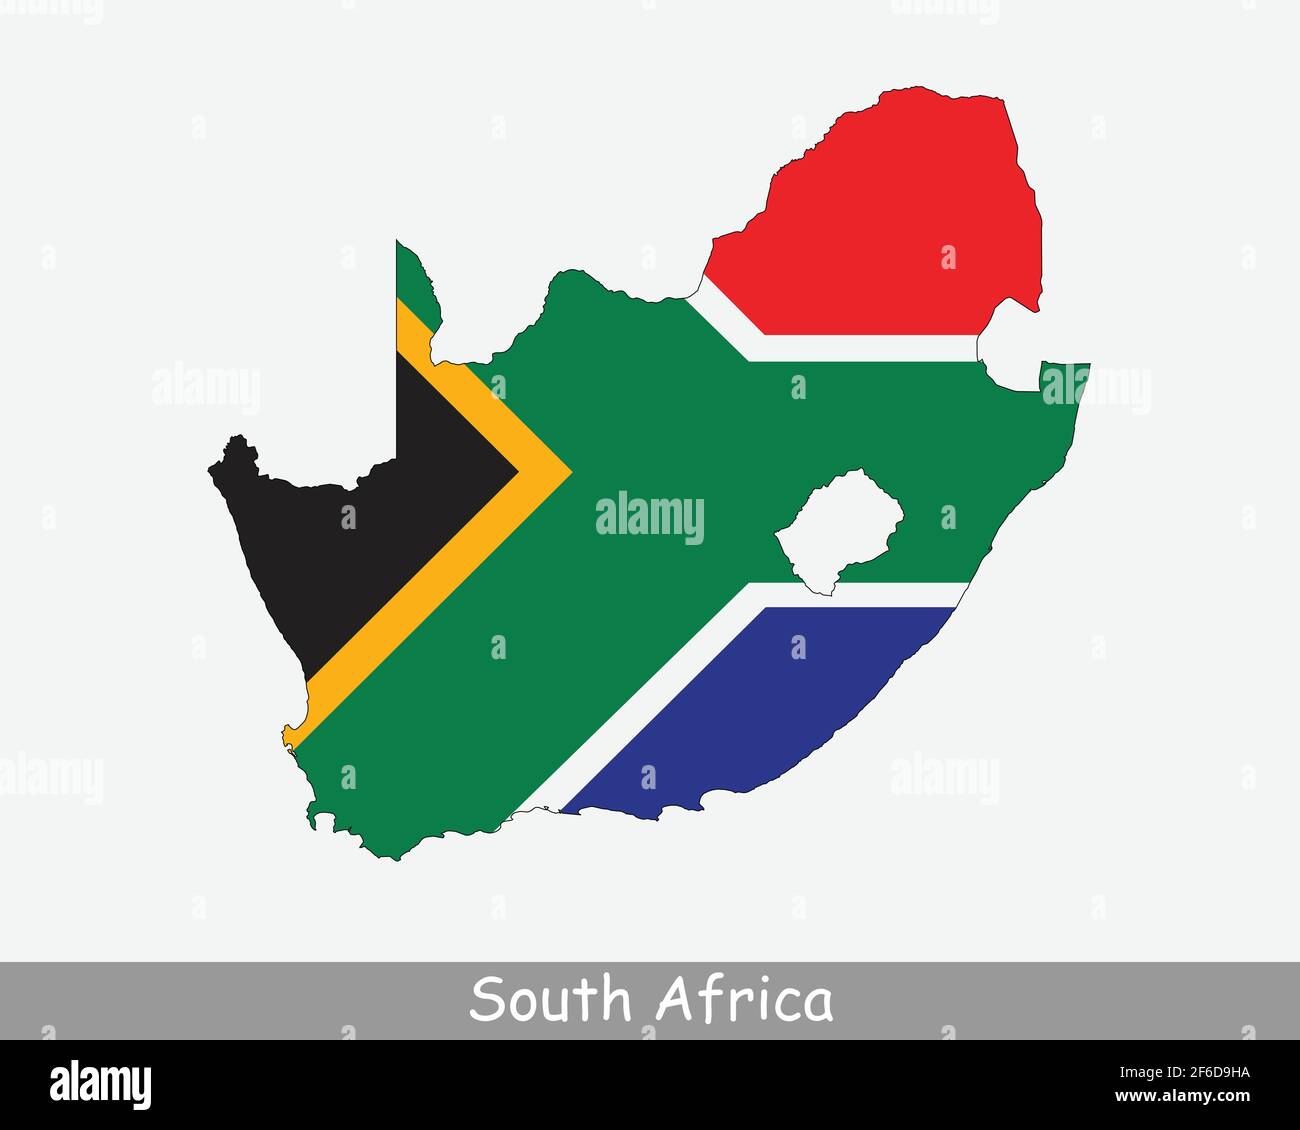 Mappa della bandiera del Sud Africa. Mappa della Repubblica del Sud Africa con la bandiera nazionale sudafricana isolata su sfondo bianco. Illustrazione vettoriale. Illustrazione Vettoriale